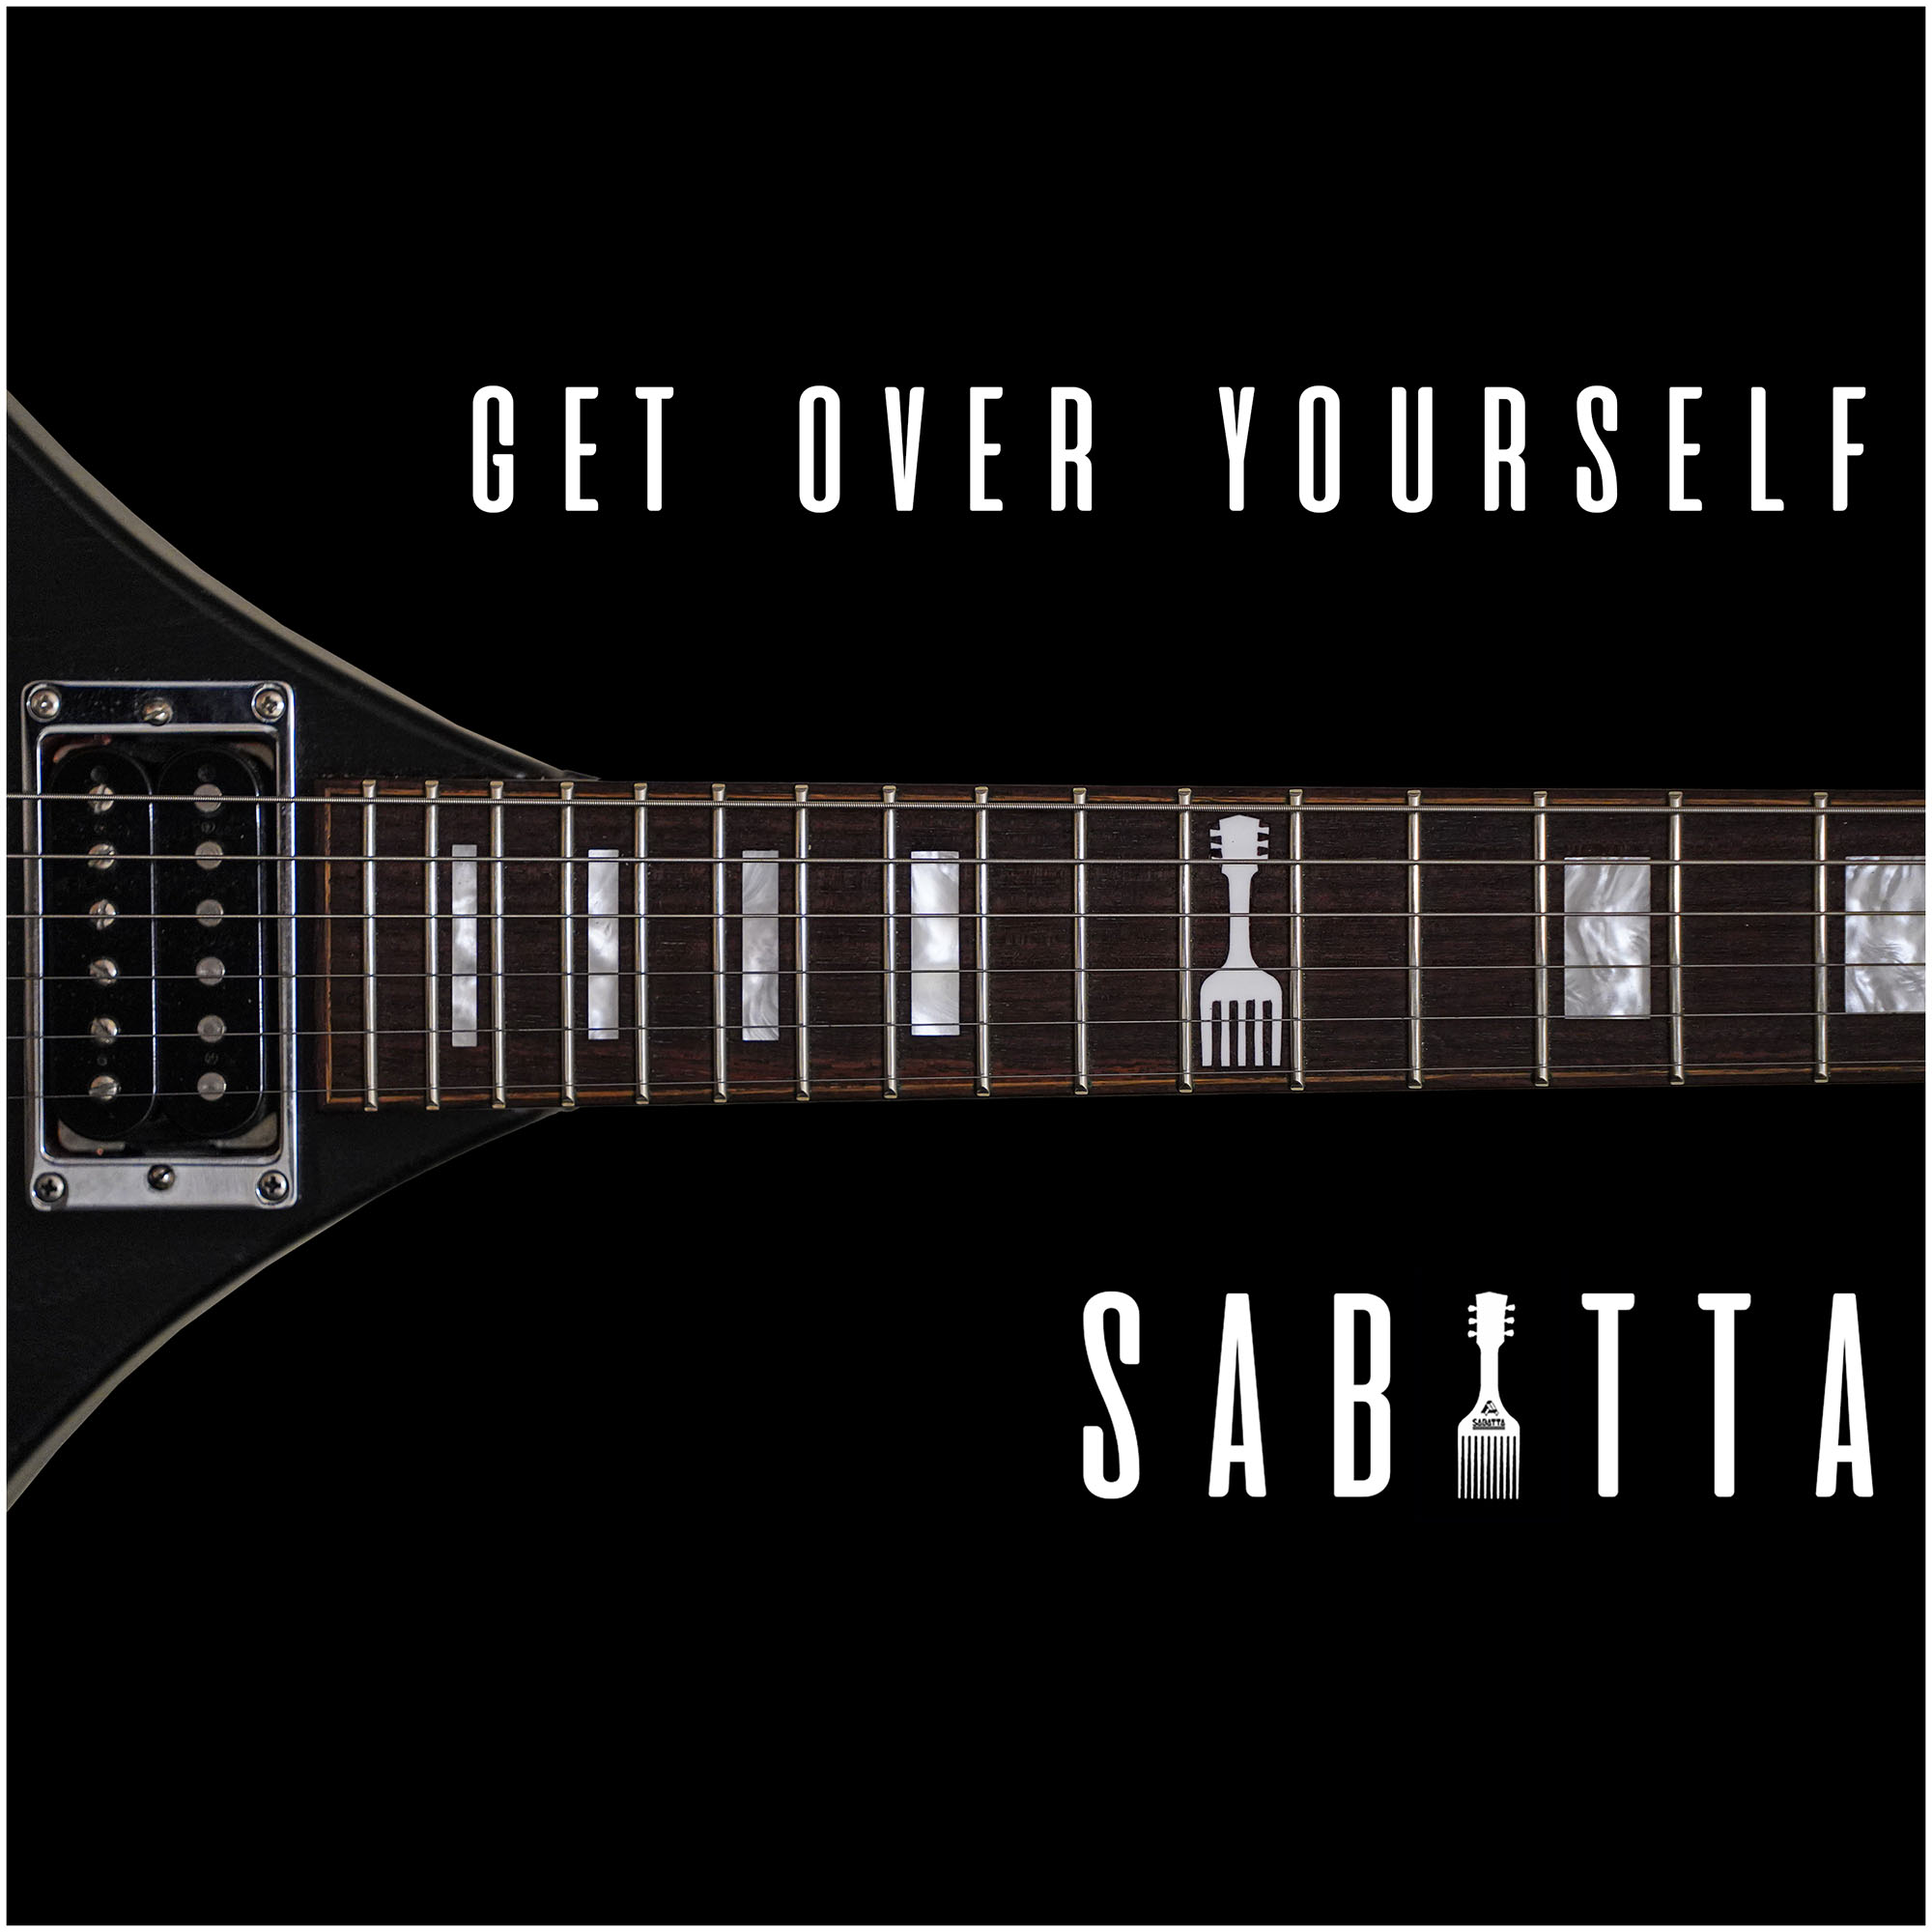 SABATTA – GET OVER YOURSELF